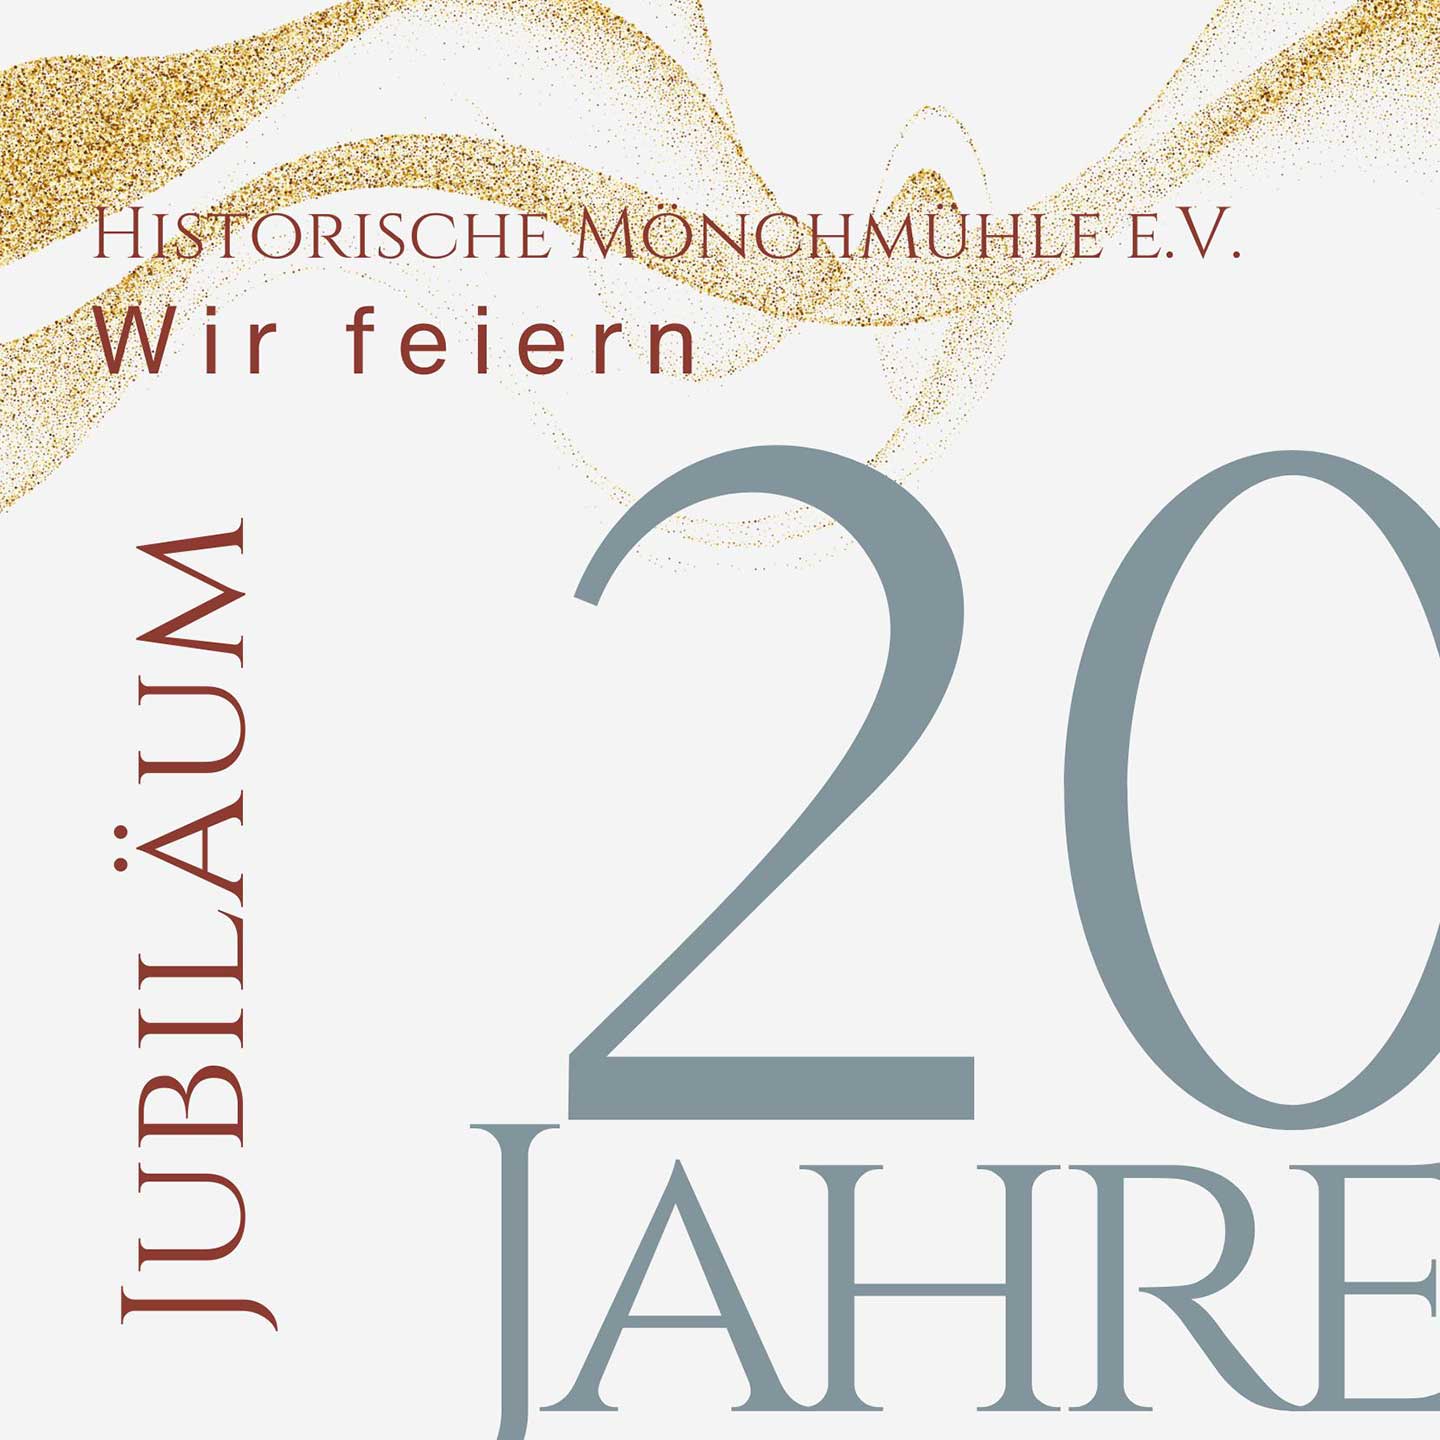 20-Jahr-Feier unseres Vereins Historische Mönchmühle e.V.